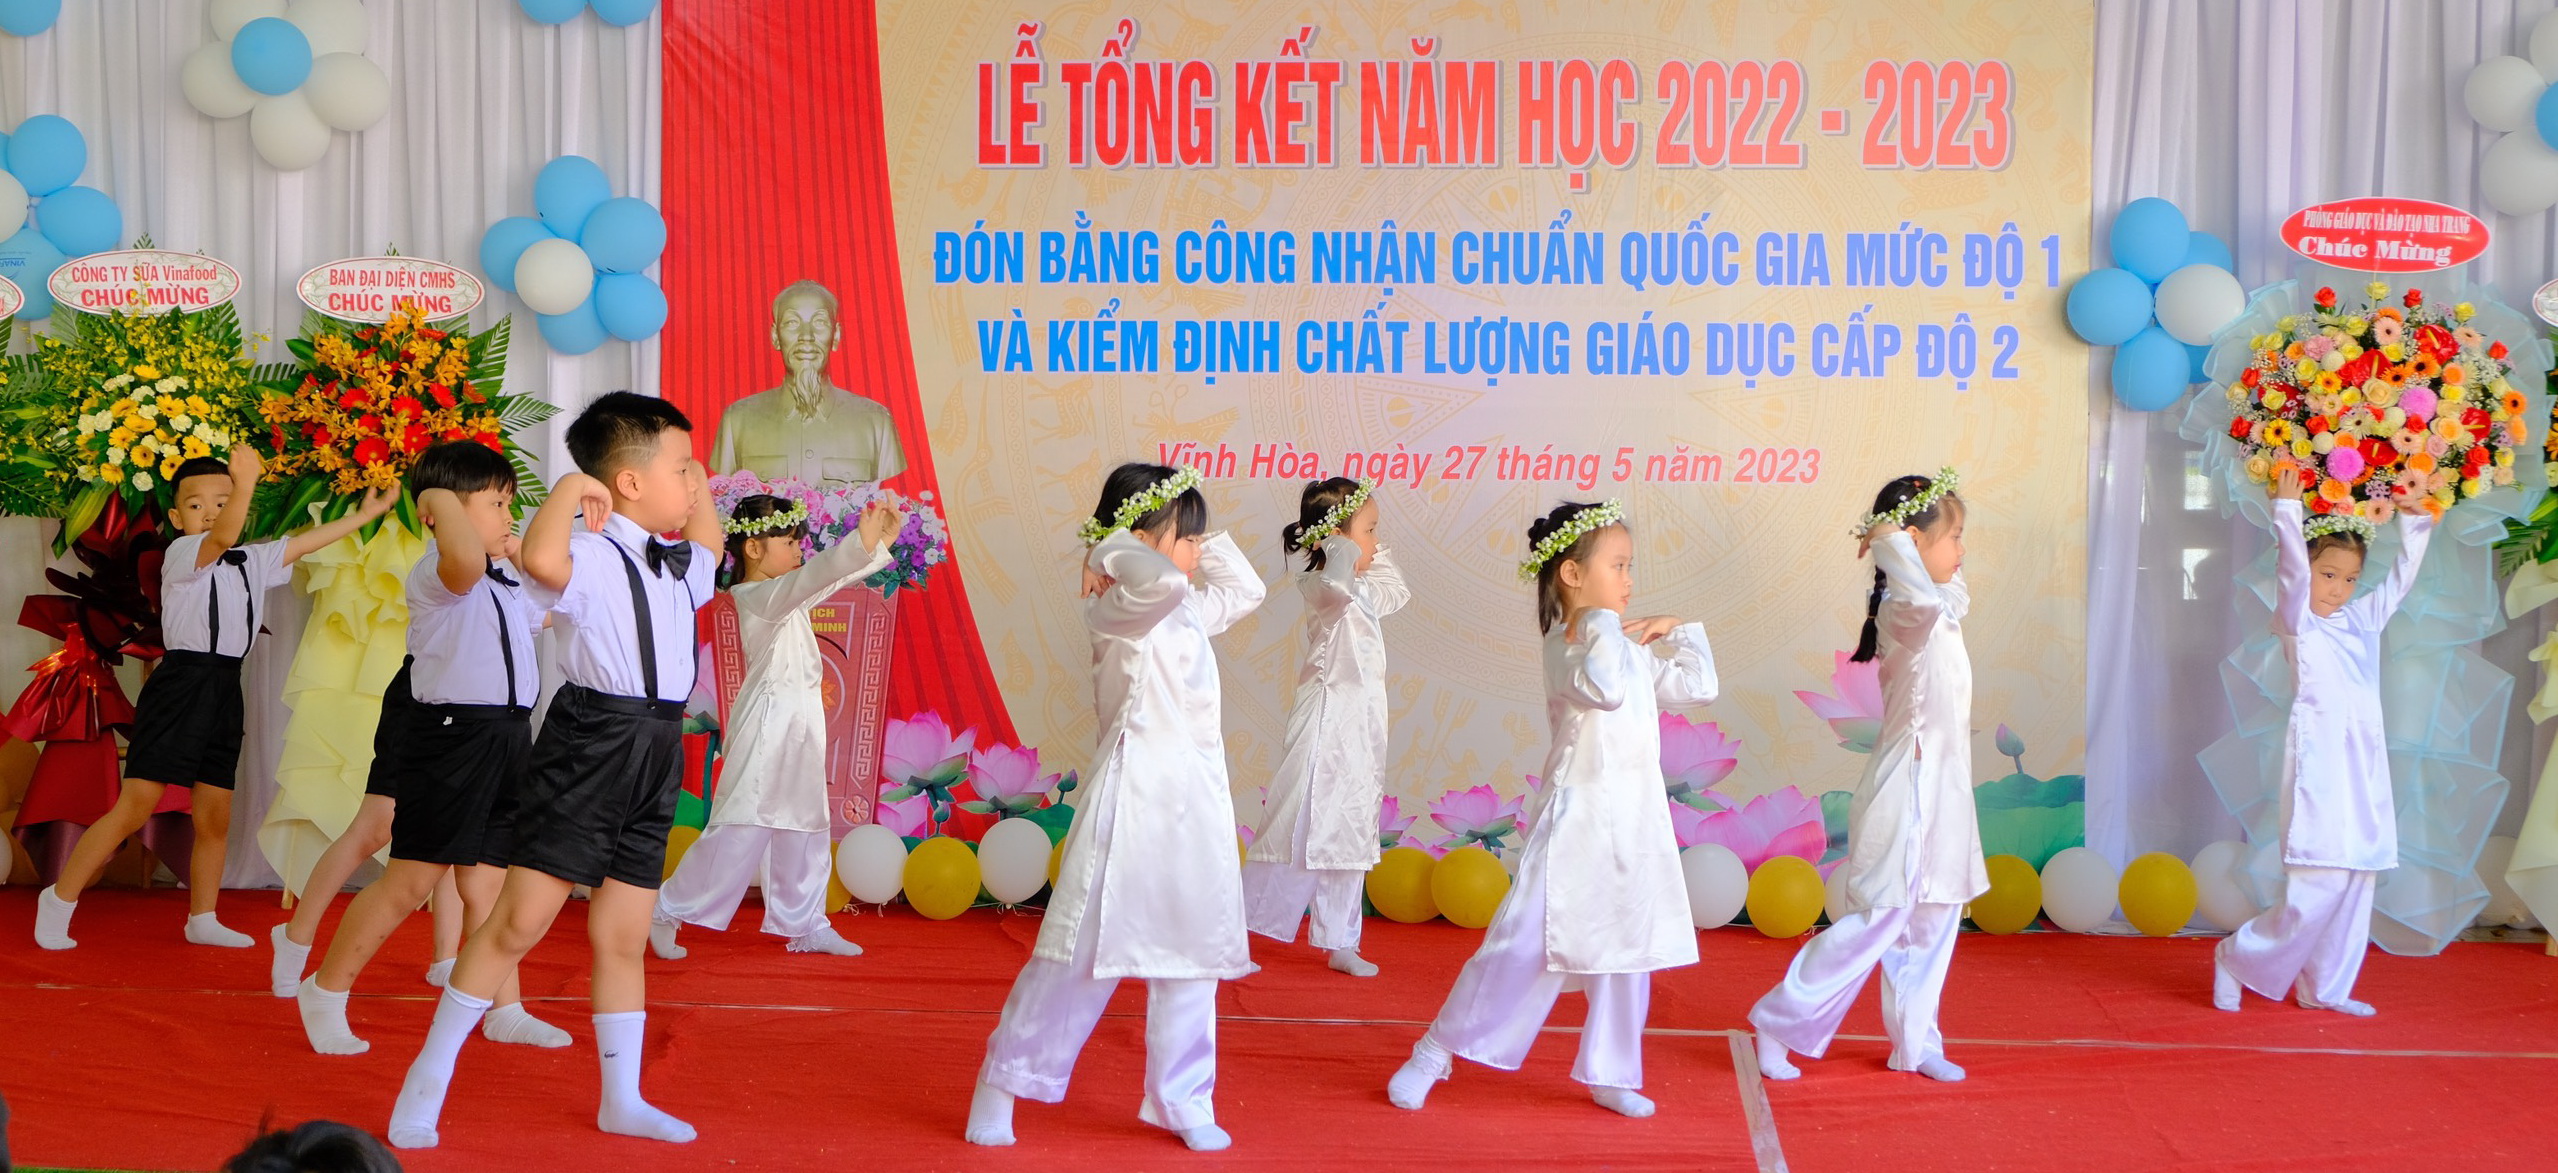 Hinh 0005- Le TK nam hoc 2023